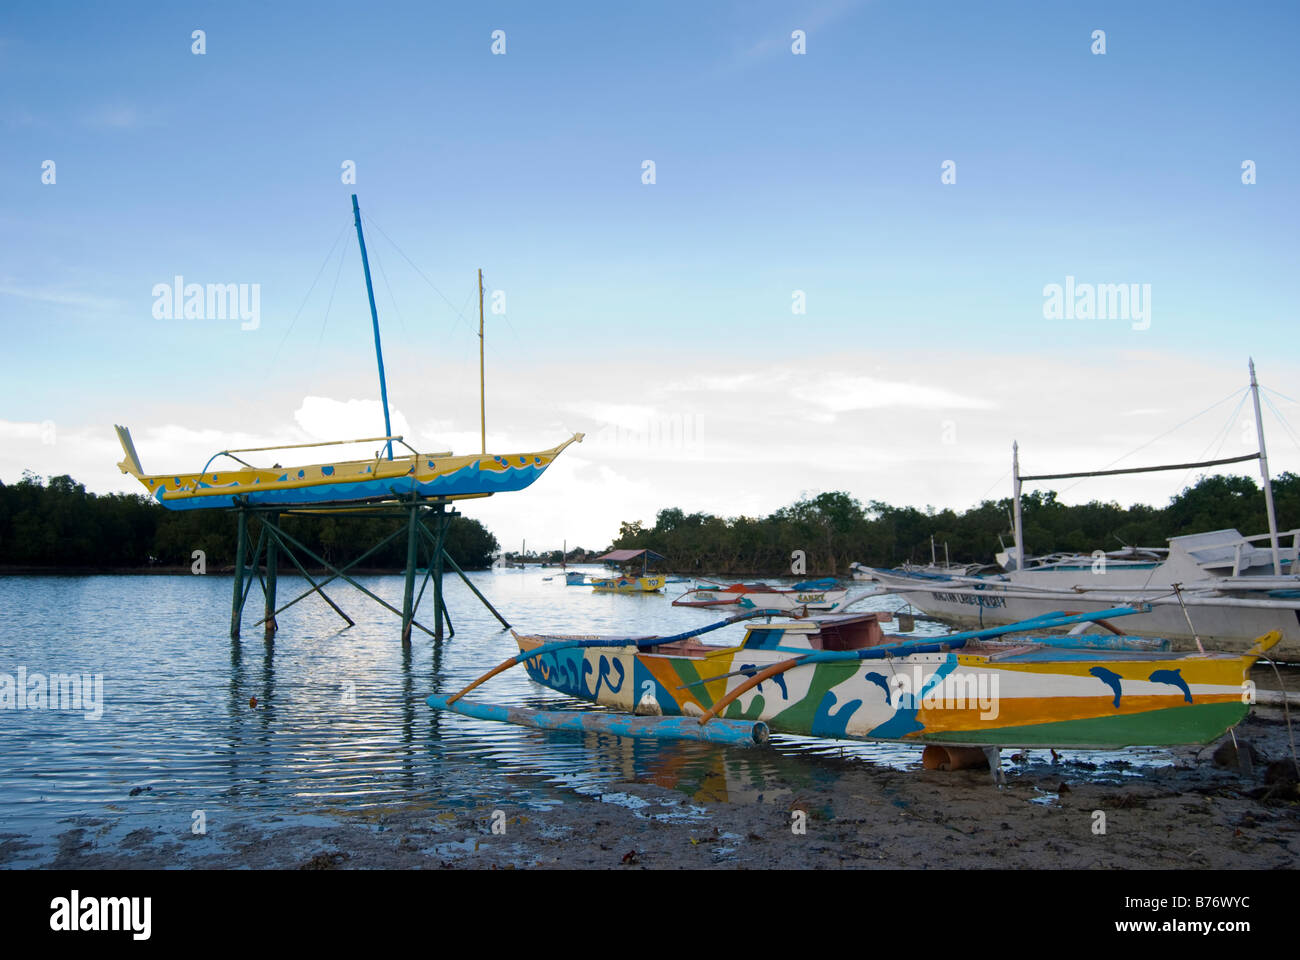 Outrigger bateaux de pêche sur pilotis de bois, Magellan Bay, Mactan Island, Cebu, Visayas, Philippines Banque D'Images